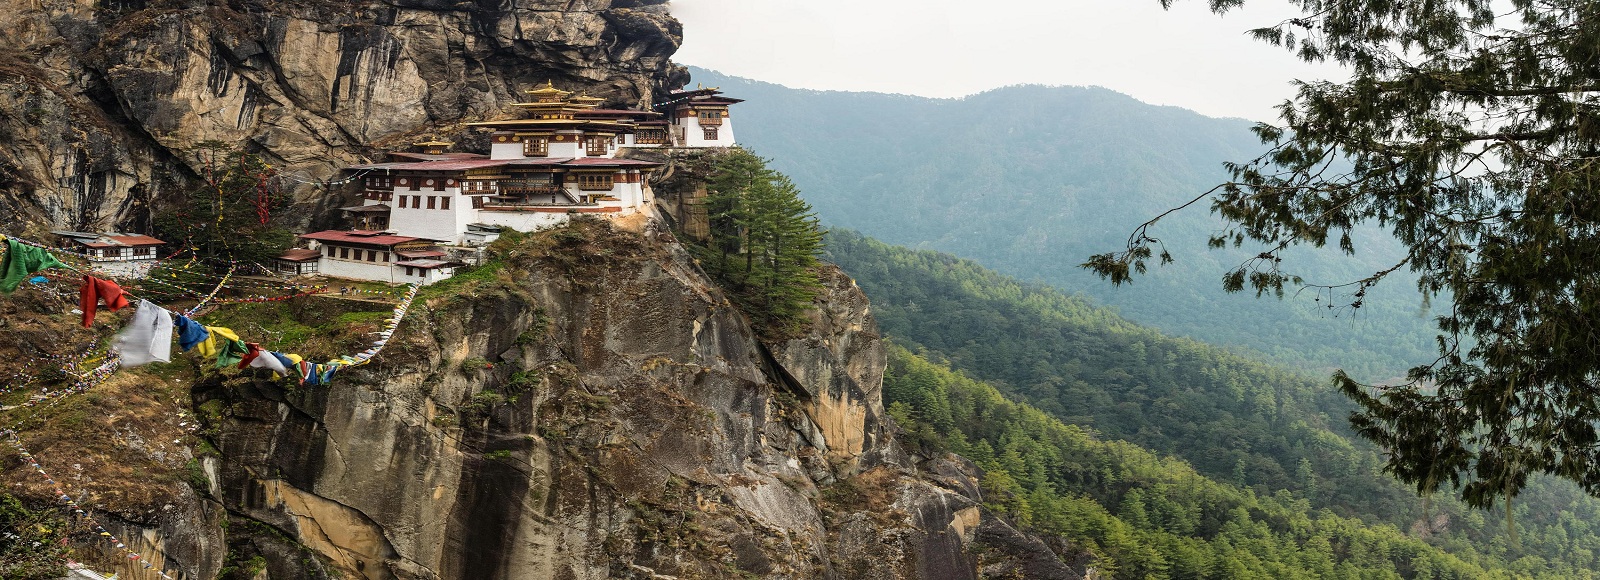 Ofertas de Traslados en Bután. Traslados económicos en Bután 